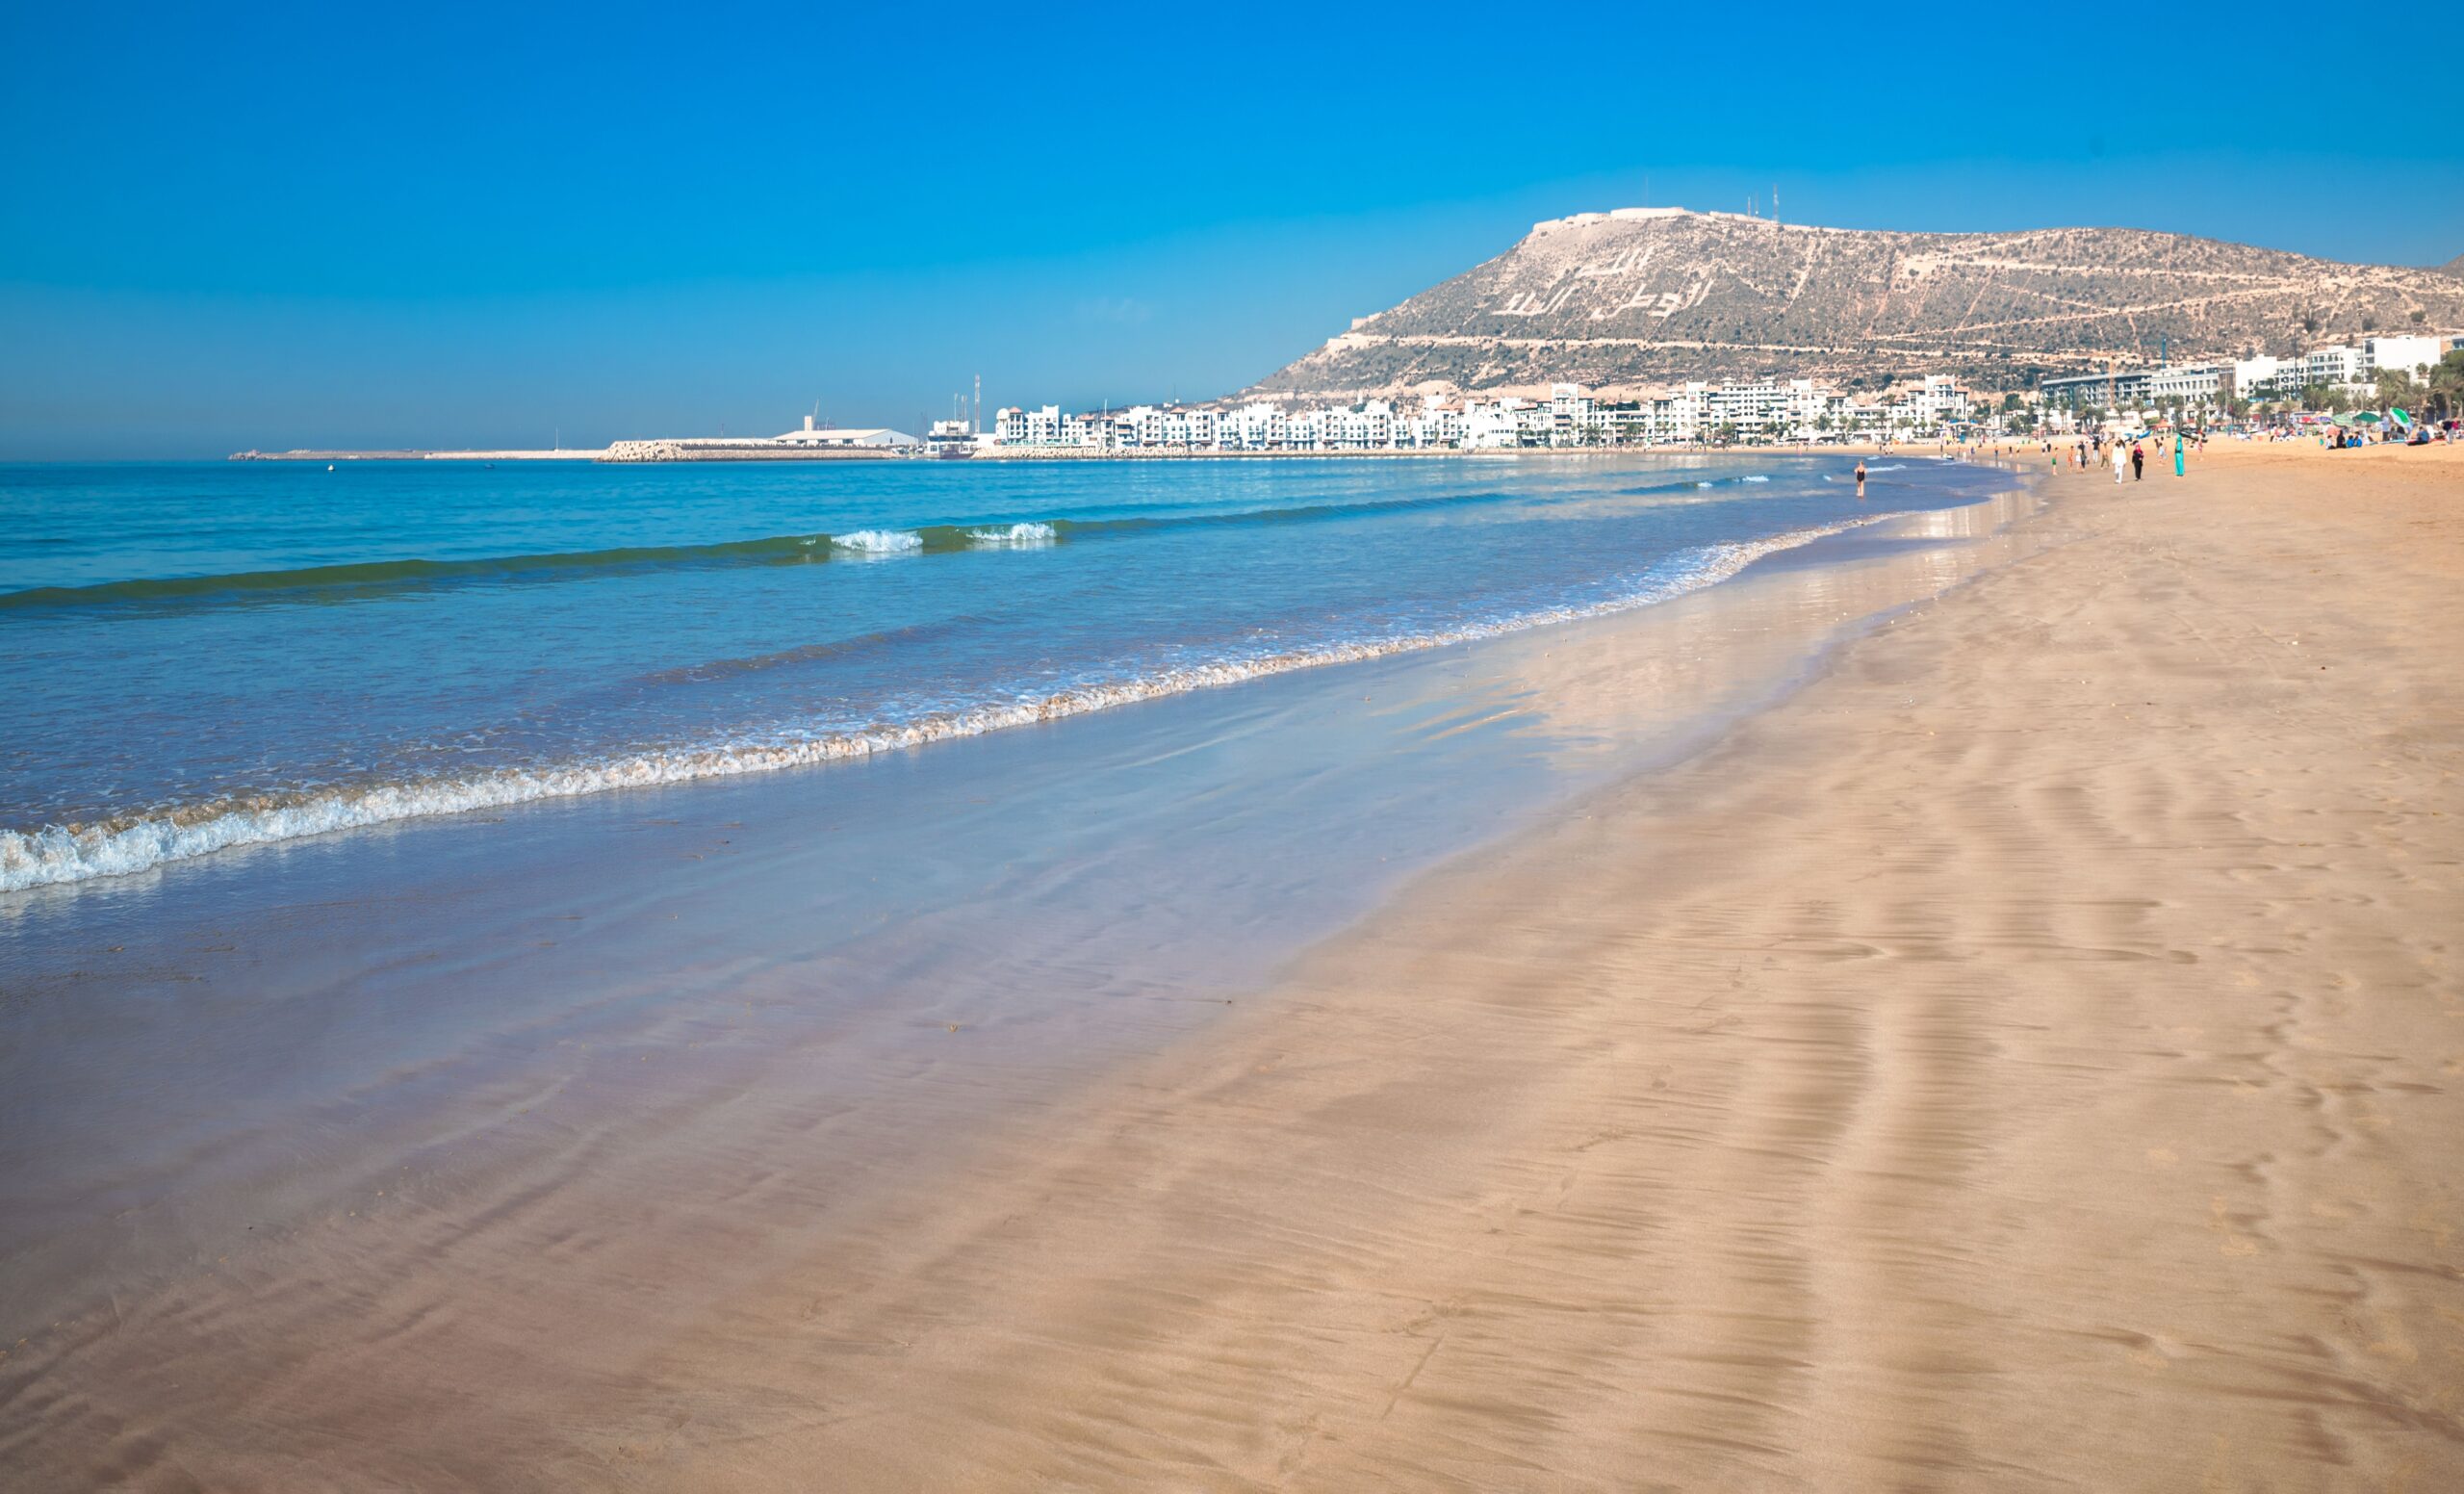 Marakeš in počitnice v Agadirju, 8 dni